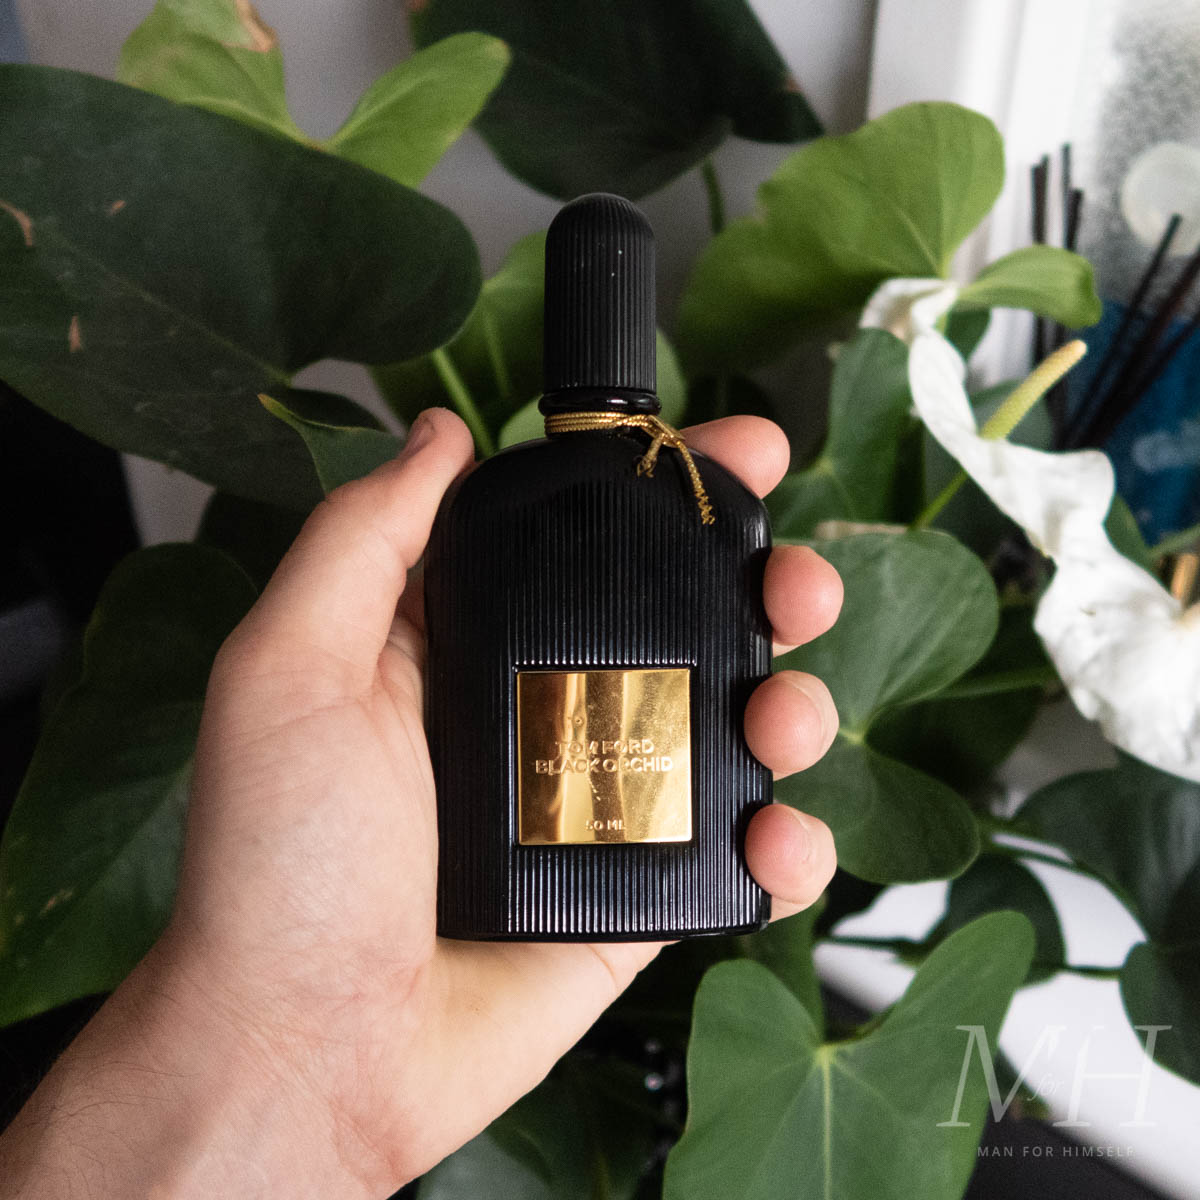 Tom Ford Black Orchid Eau de Parfum - Felix Online